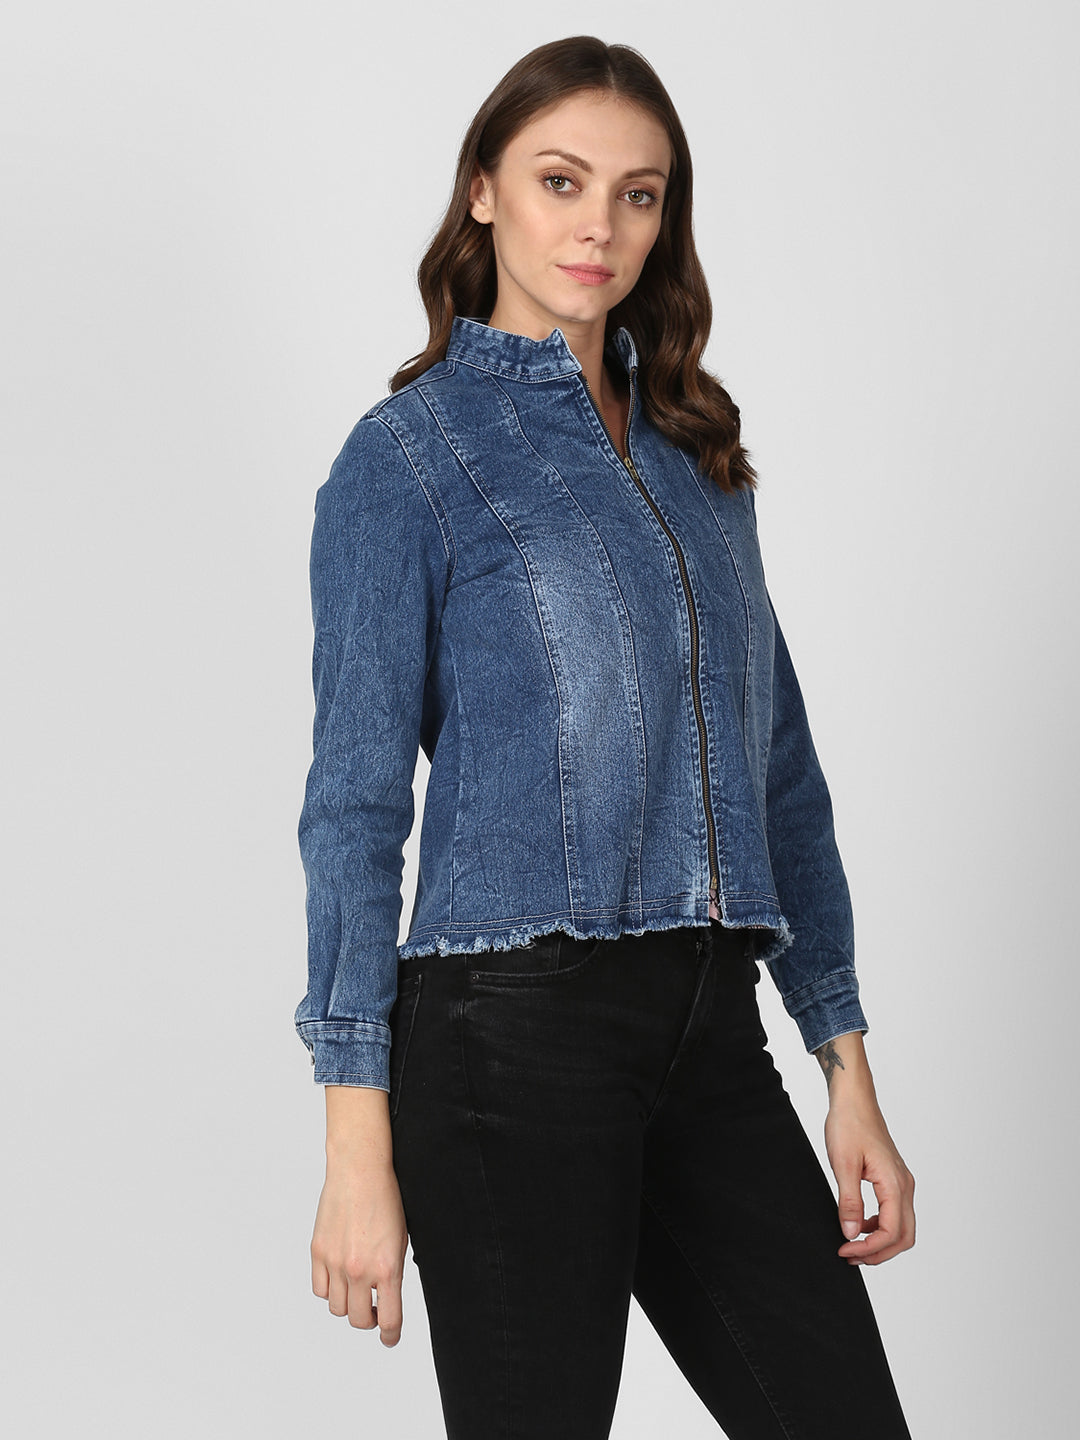 Women's Blue Denim Jacket with Zip